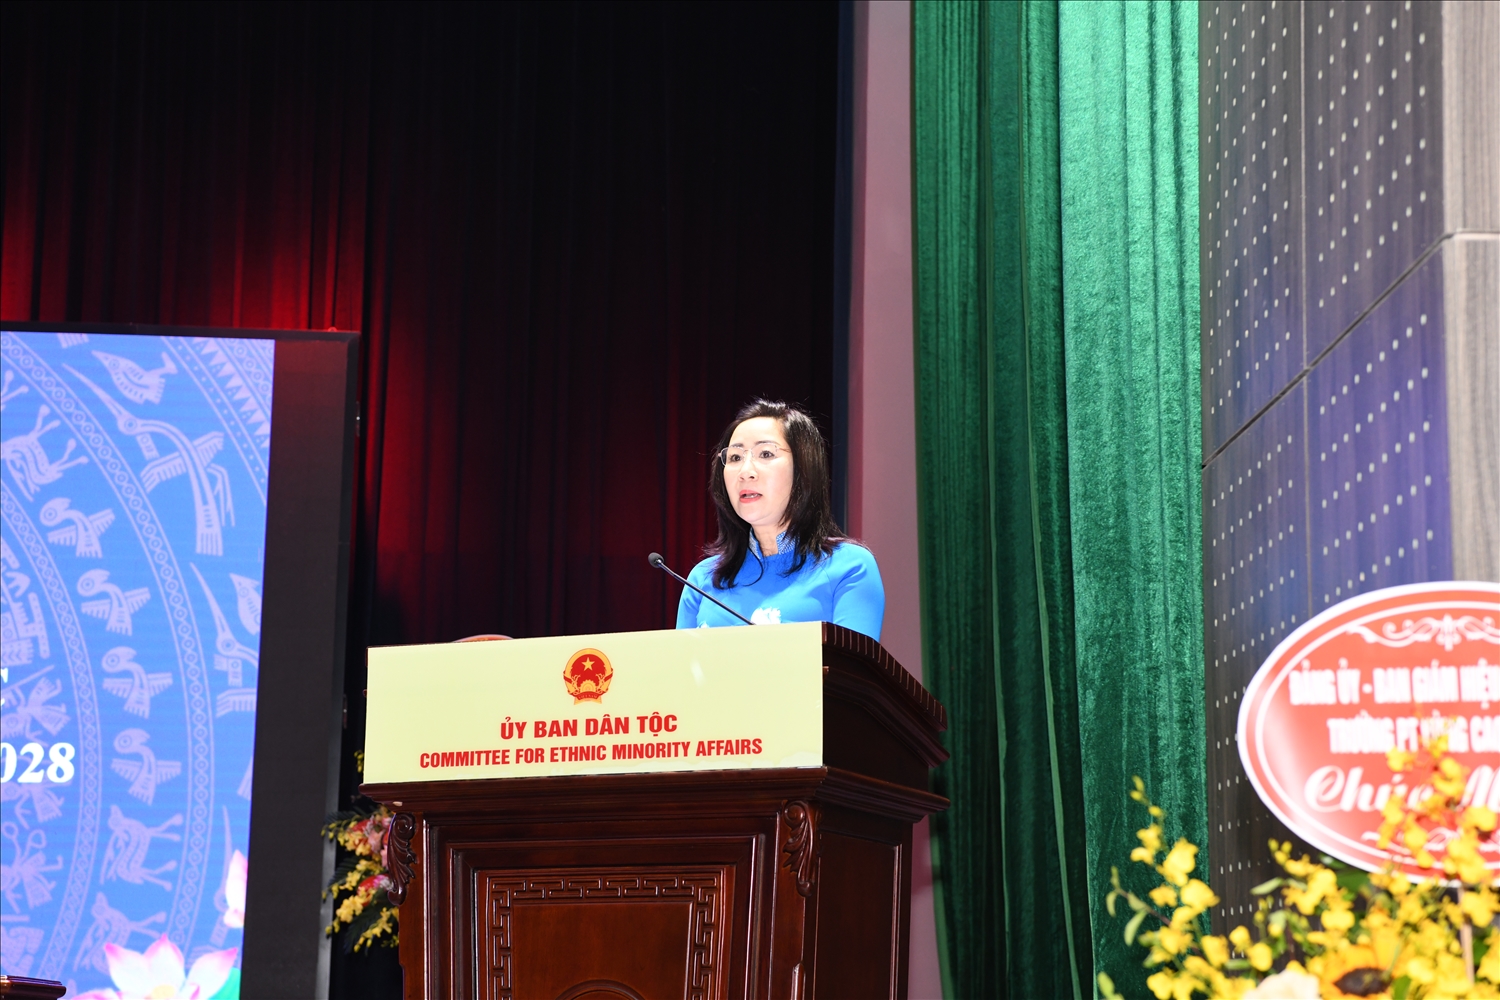 Bà Trần Thị Kim Anh, Phó Chủ tịch Công đoàn Viên chức Việt Nam phát biểu chỉ đạo tại Hội nghị